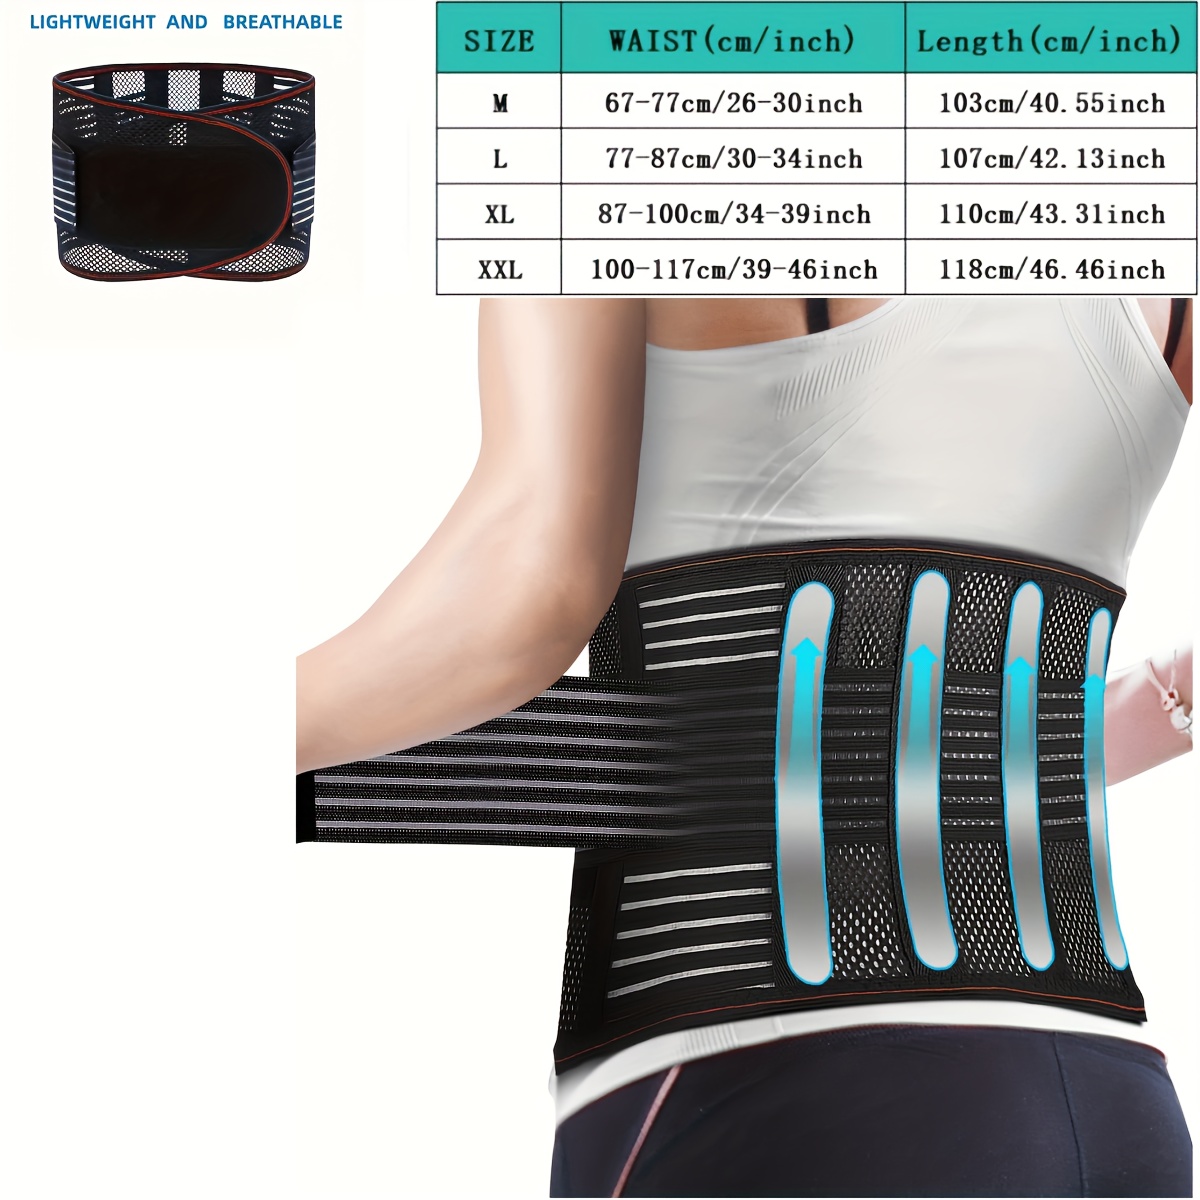 

Back Support Belt, Lightweight Breathable Lumbar Brace For Men And Women, Spine Support Adjustable Waist Belt Waistband